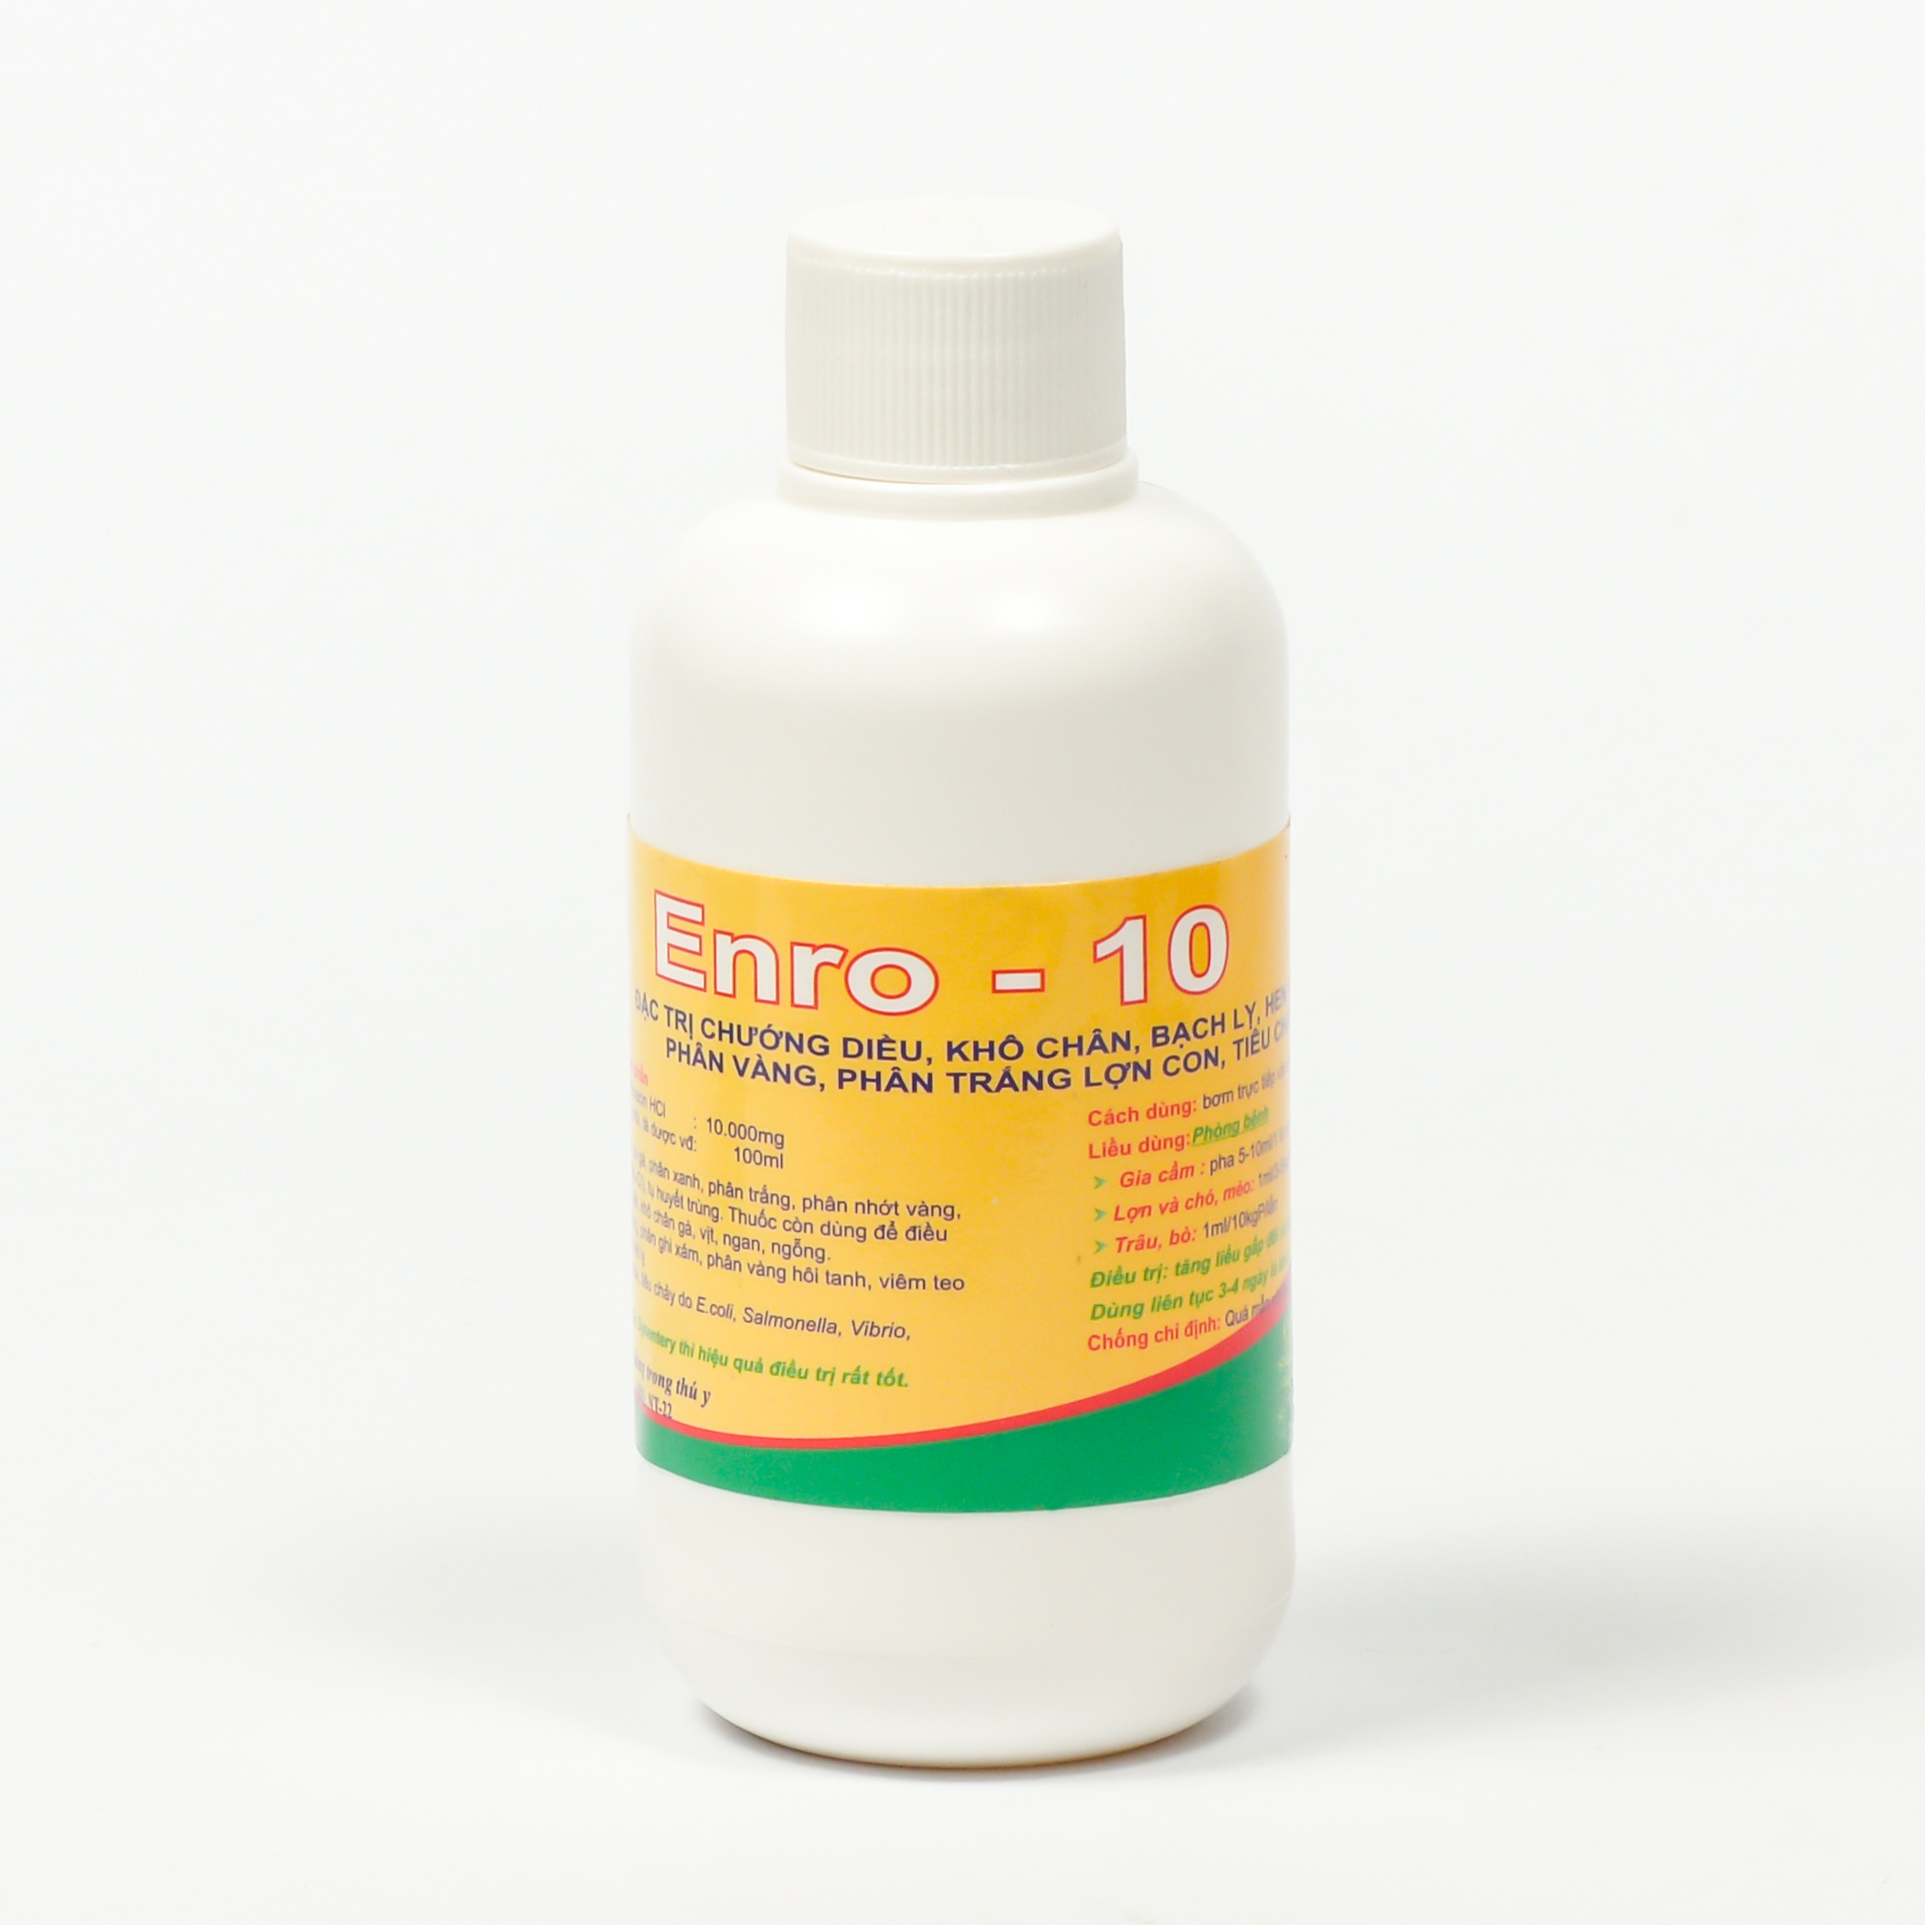 Enro – 10